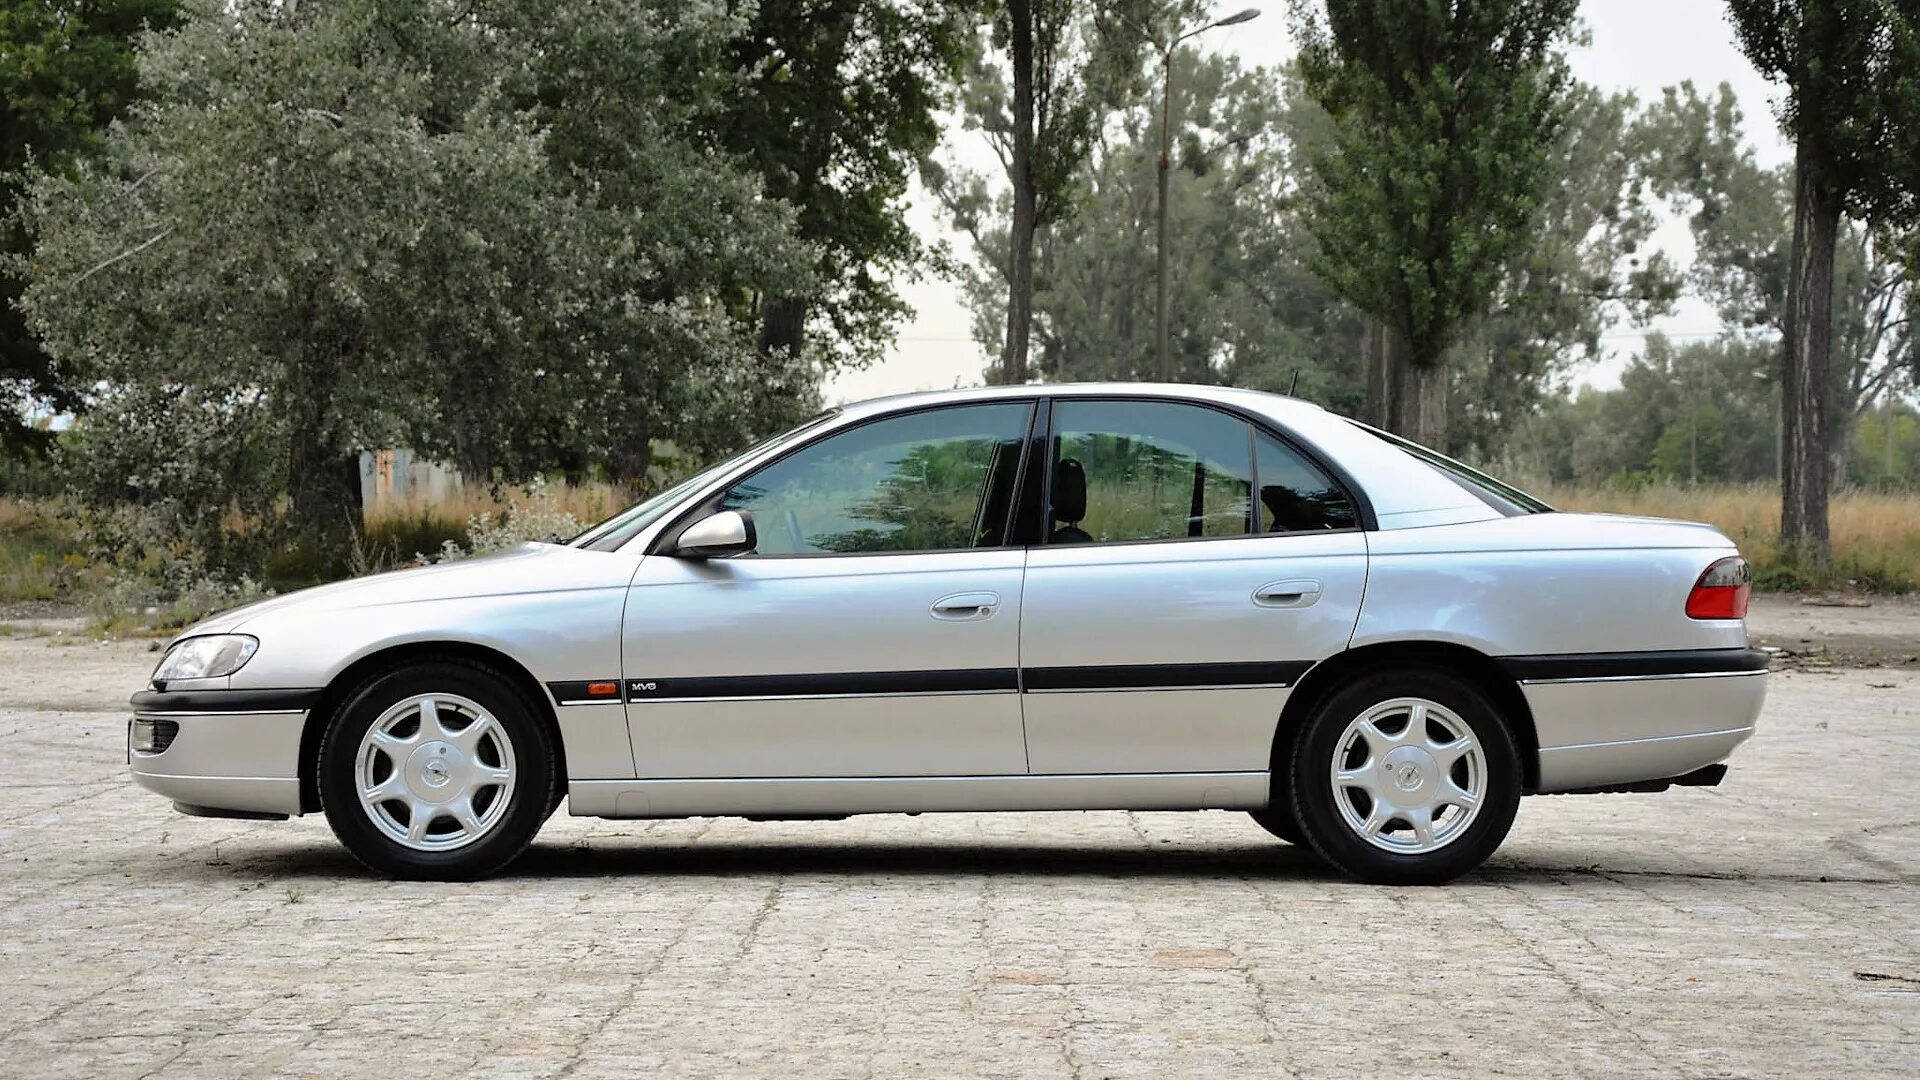 Opel Omega 1998. Opel Omega b mv6. Opel Omega b 1998. Опель Омега б 1998. Омега б 1998